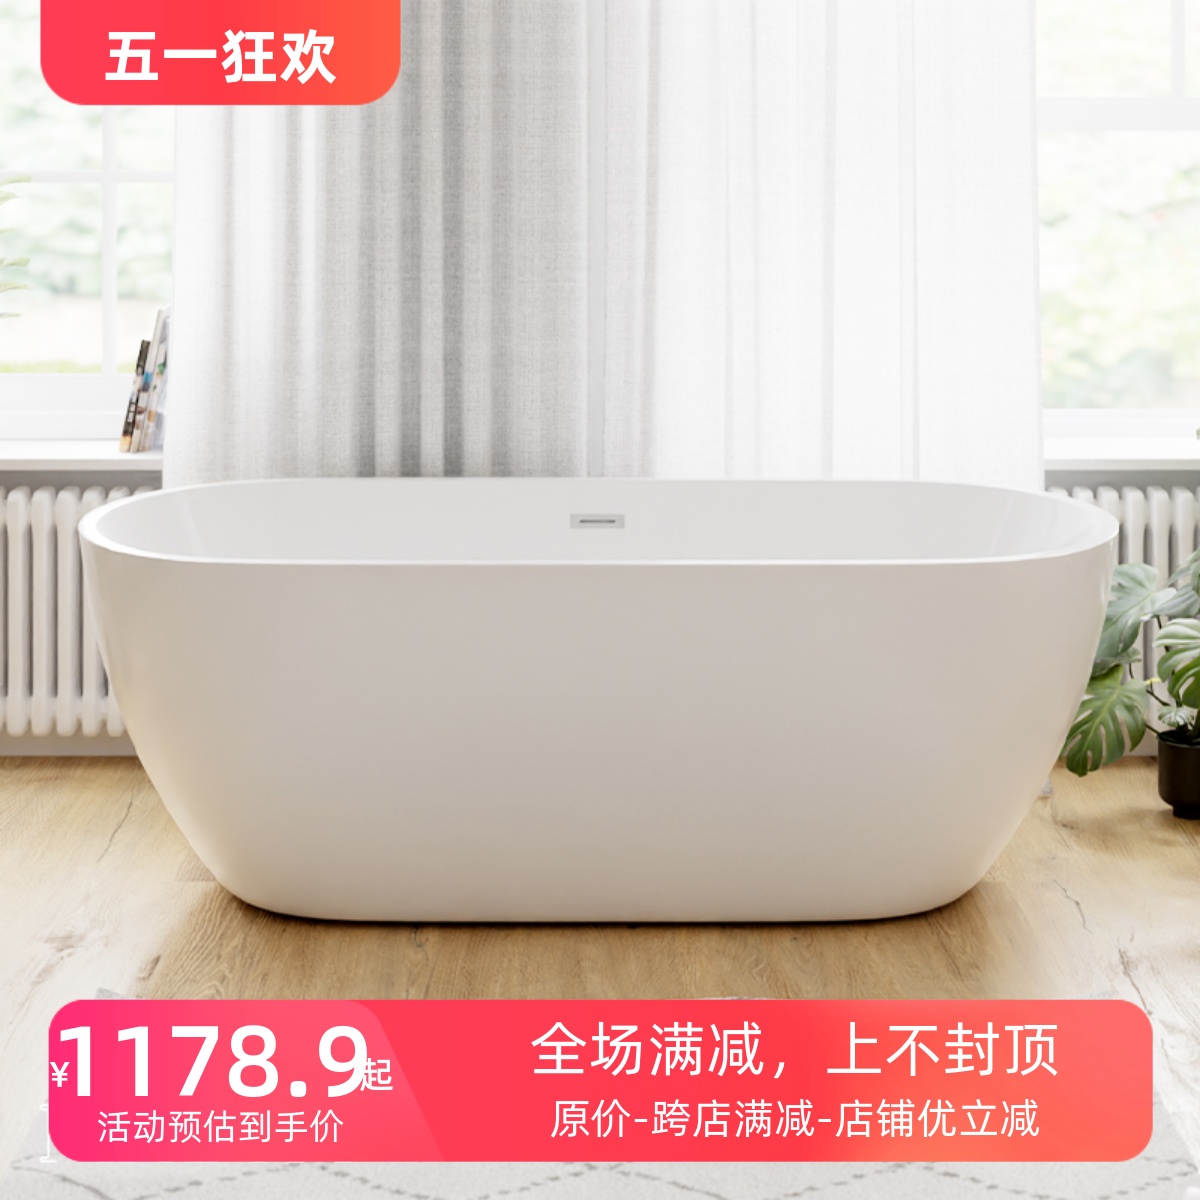 魅生小户型薄边网红家用浴缸 成人简易亚克力独立浴盆1.2m-1.7米